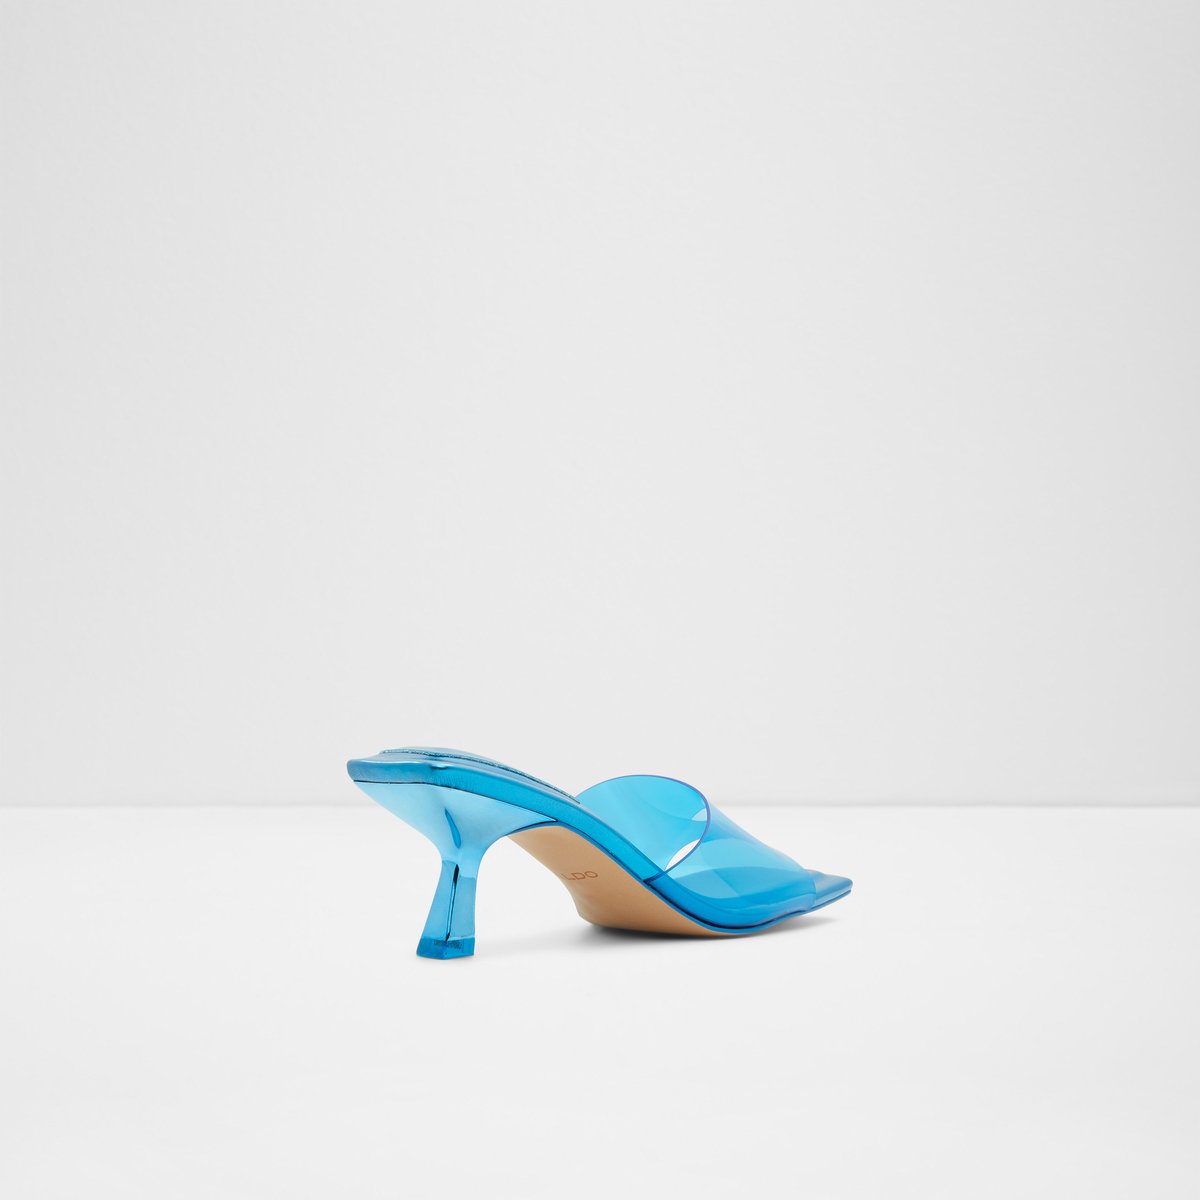 Cassilia Women Shoes - Medium Blue - ALDO KSA